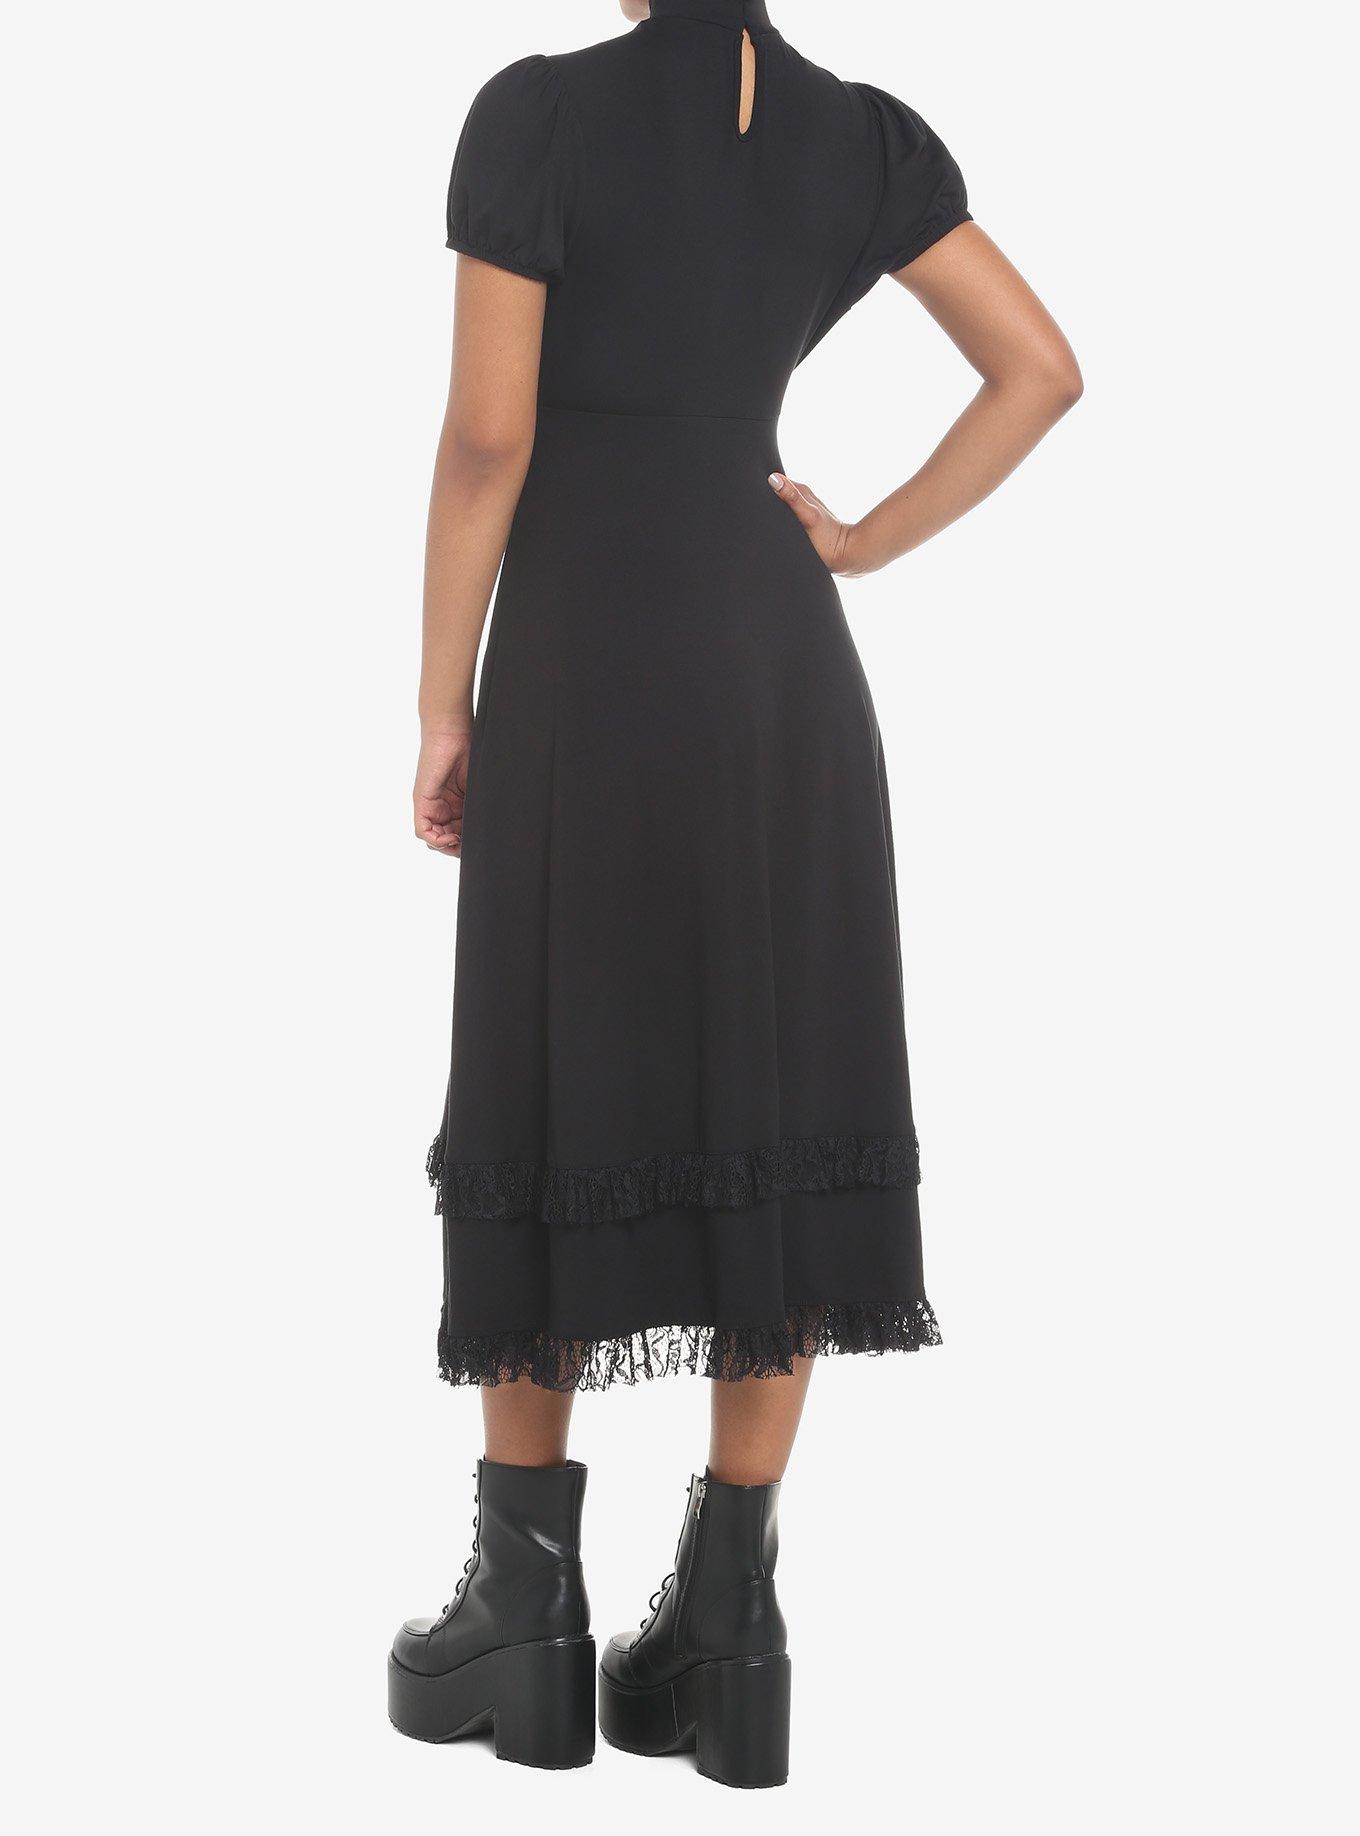 Black Lace Midi Dress, BLACK, alternate